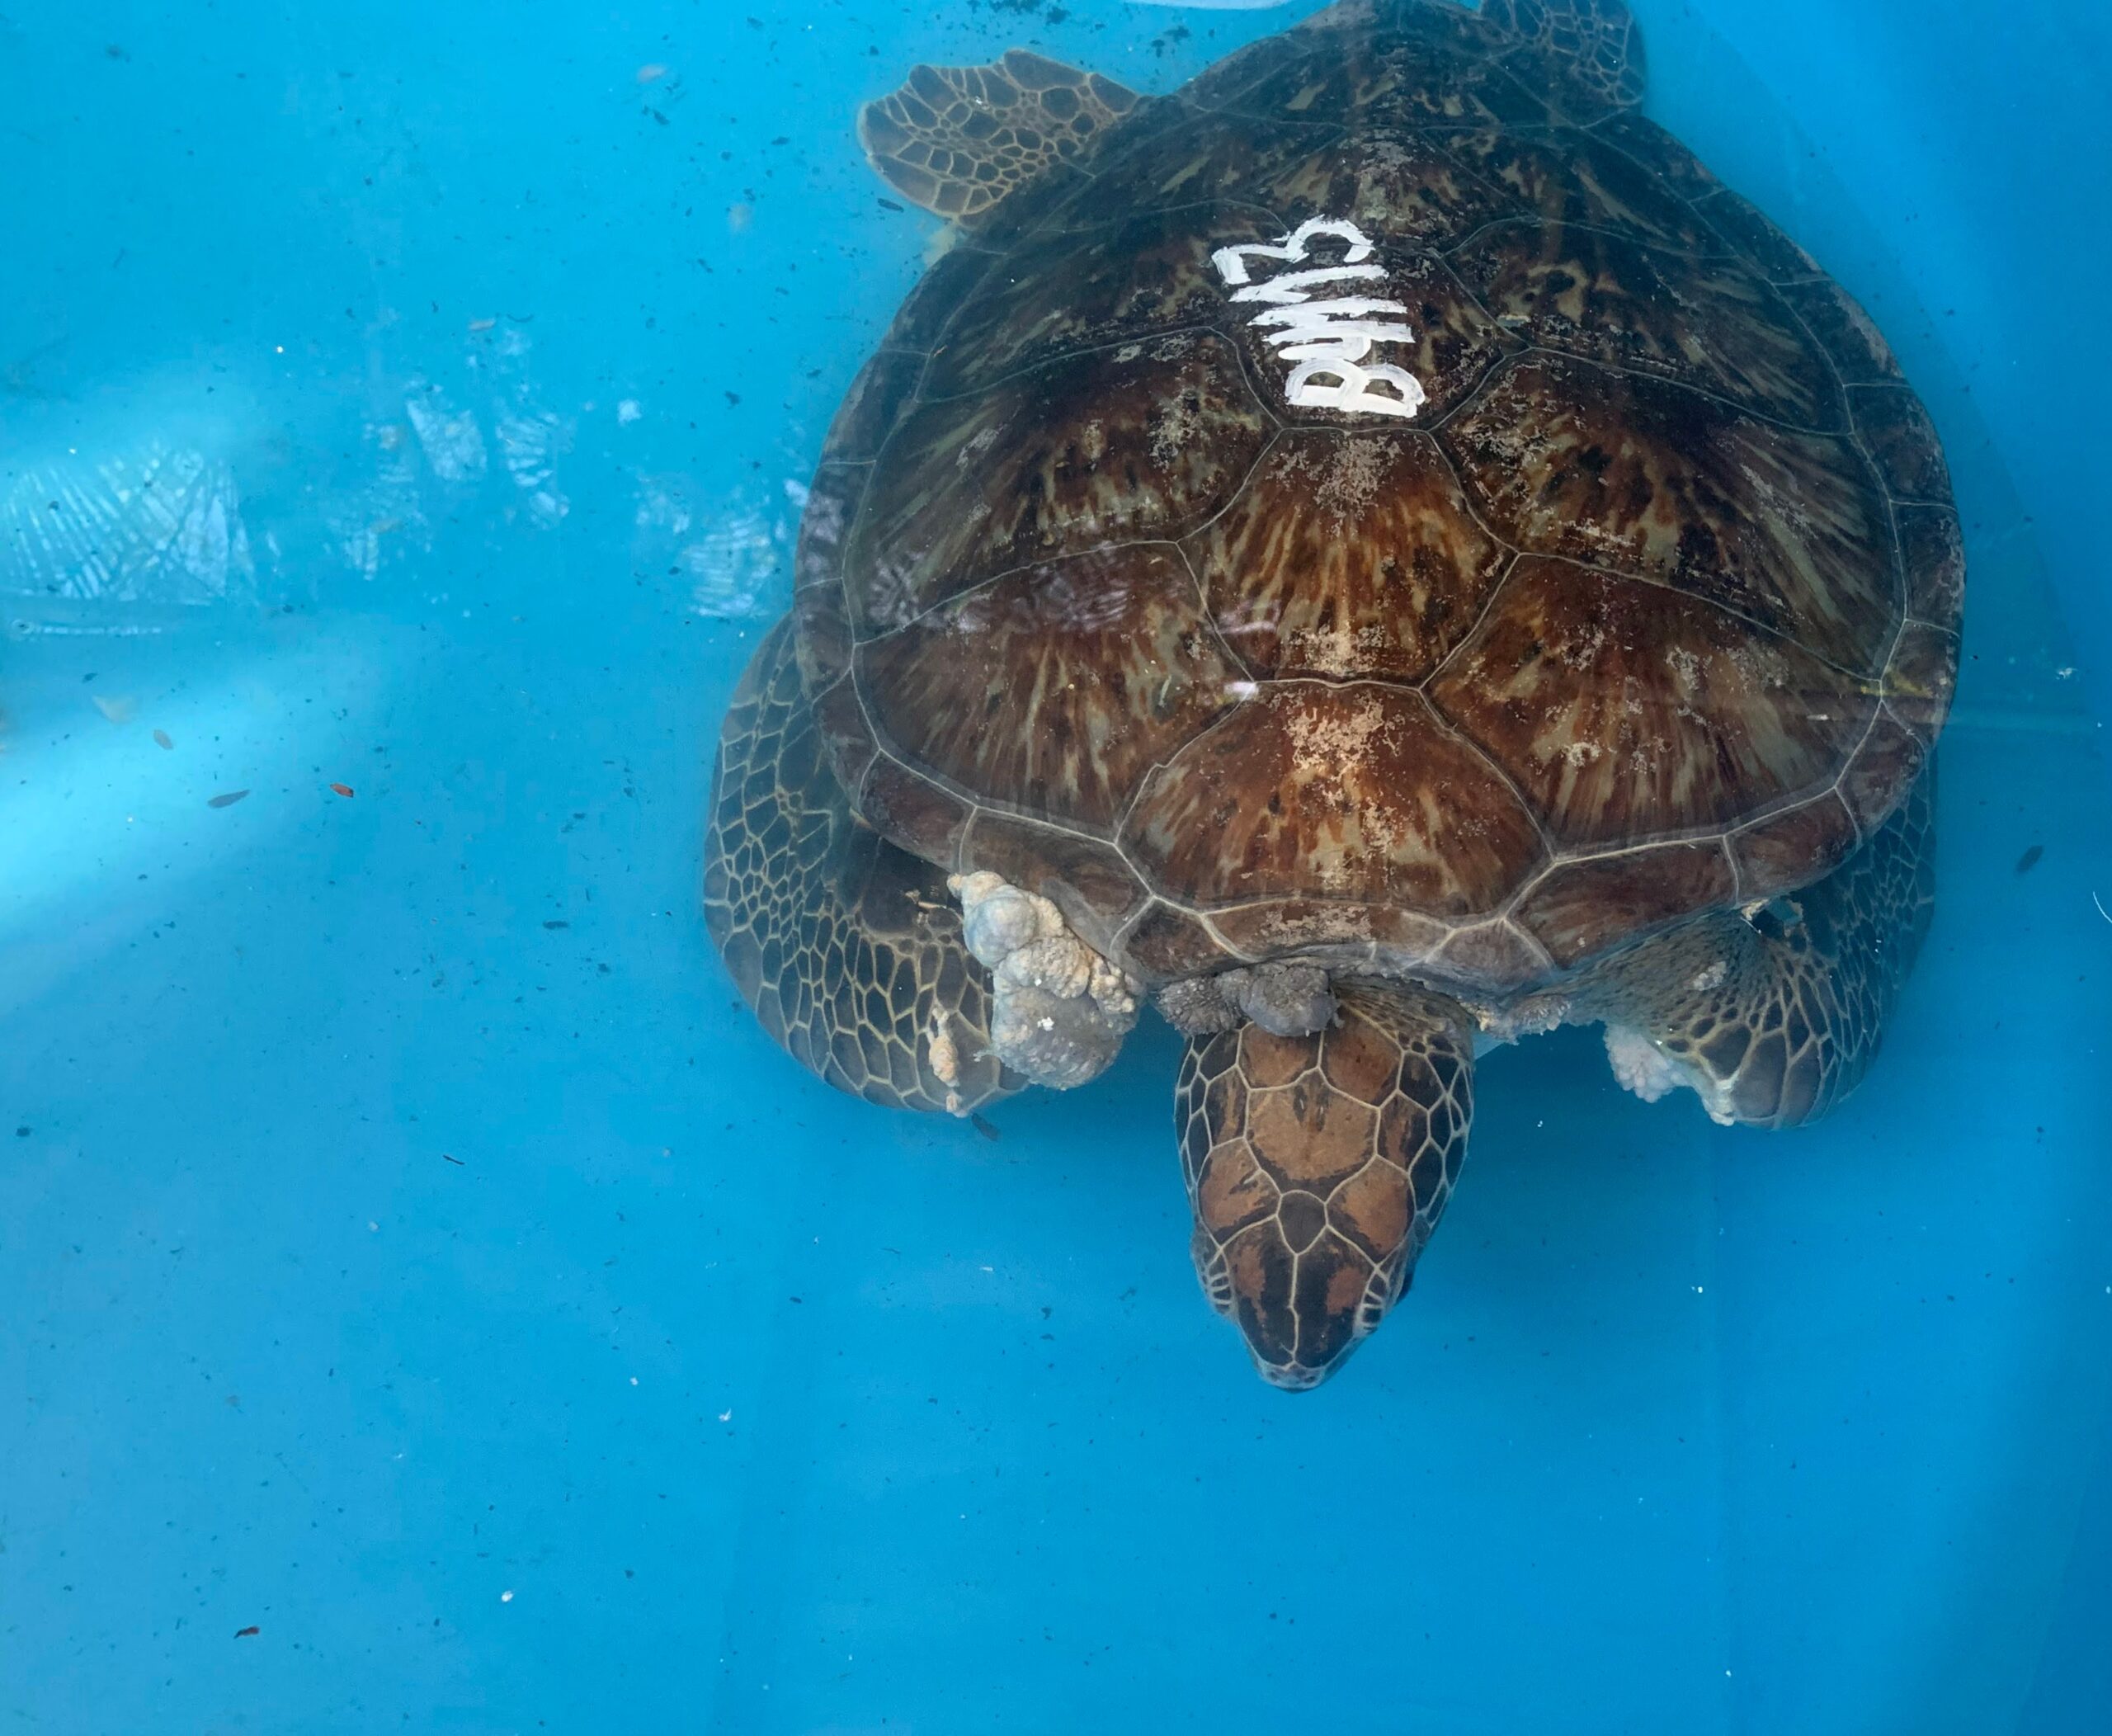 Case Study: Assessing Fibropapillomatosis in Green Sea Turtles in Espírito Santo, Brazil